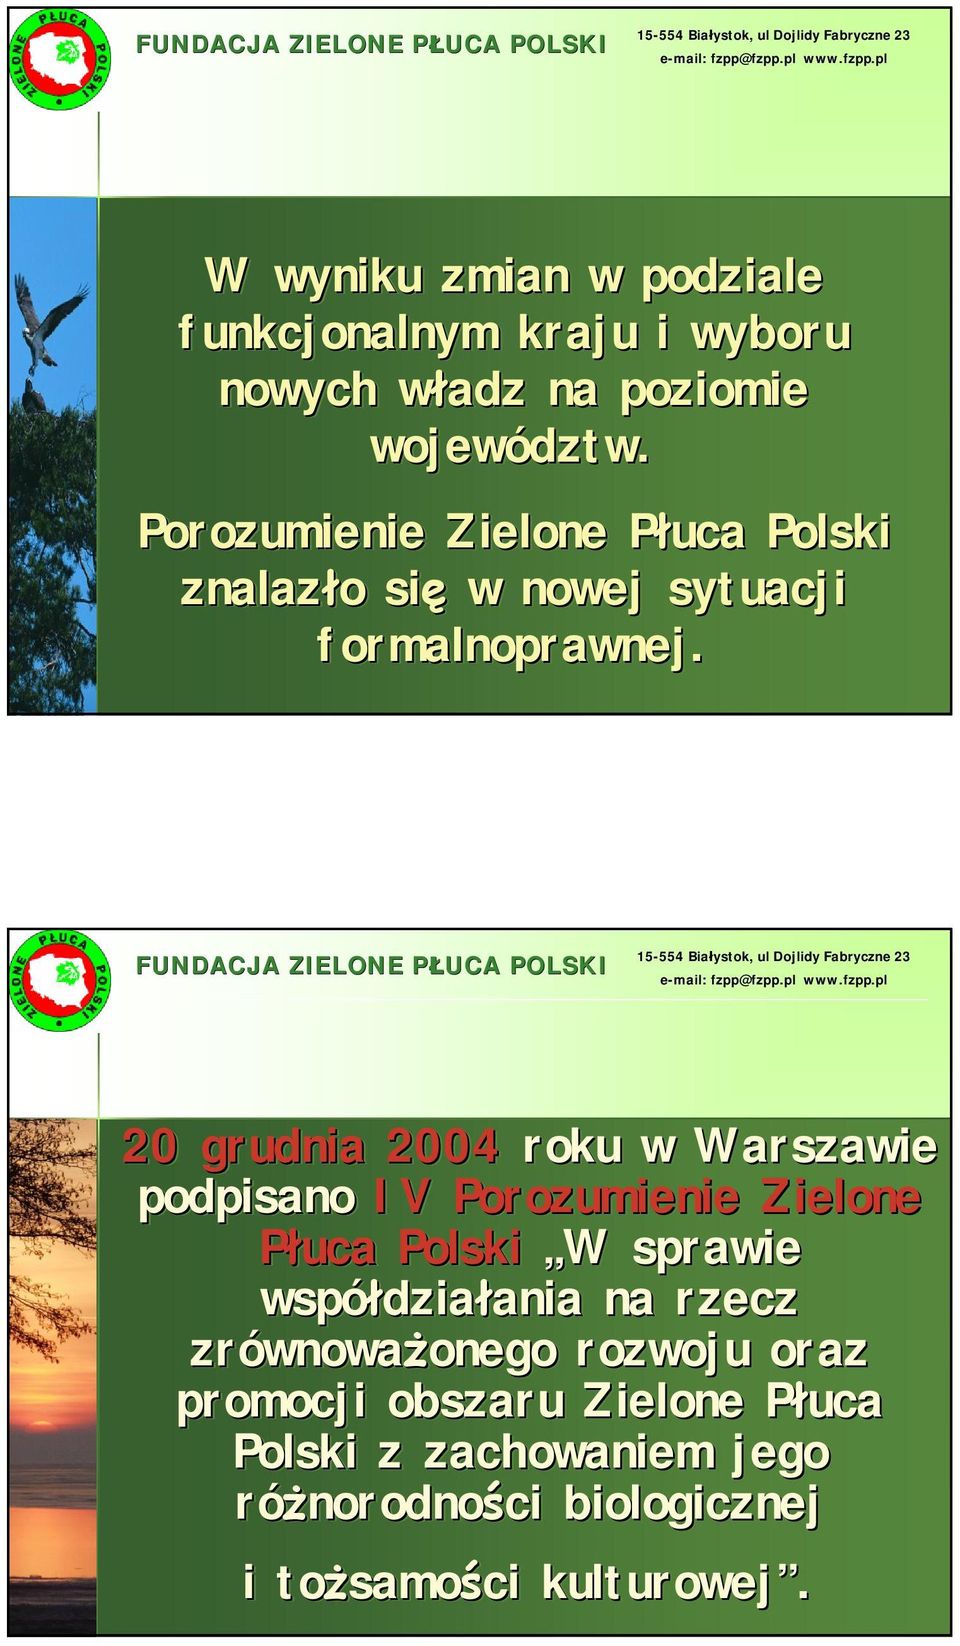 20 grudnia 2004 roku w Warszawie podpisano IV Porozumienie Zielone Płuca W W sprawie współdziałania działania ania